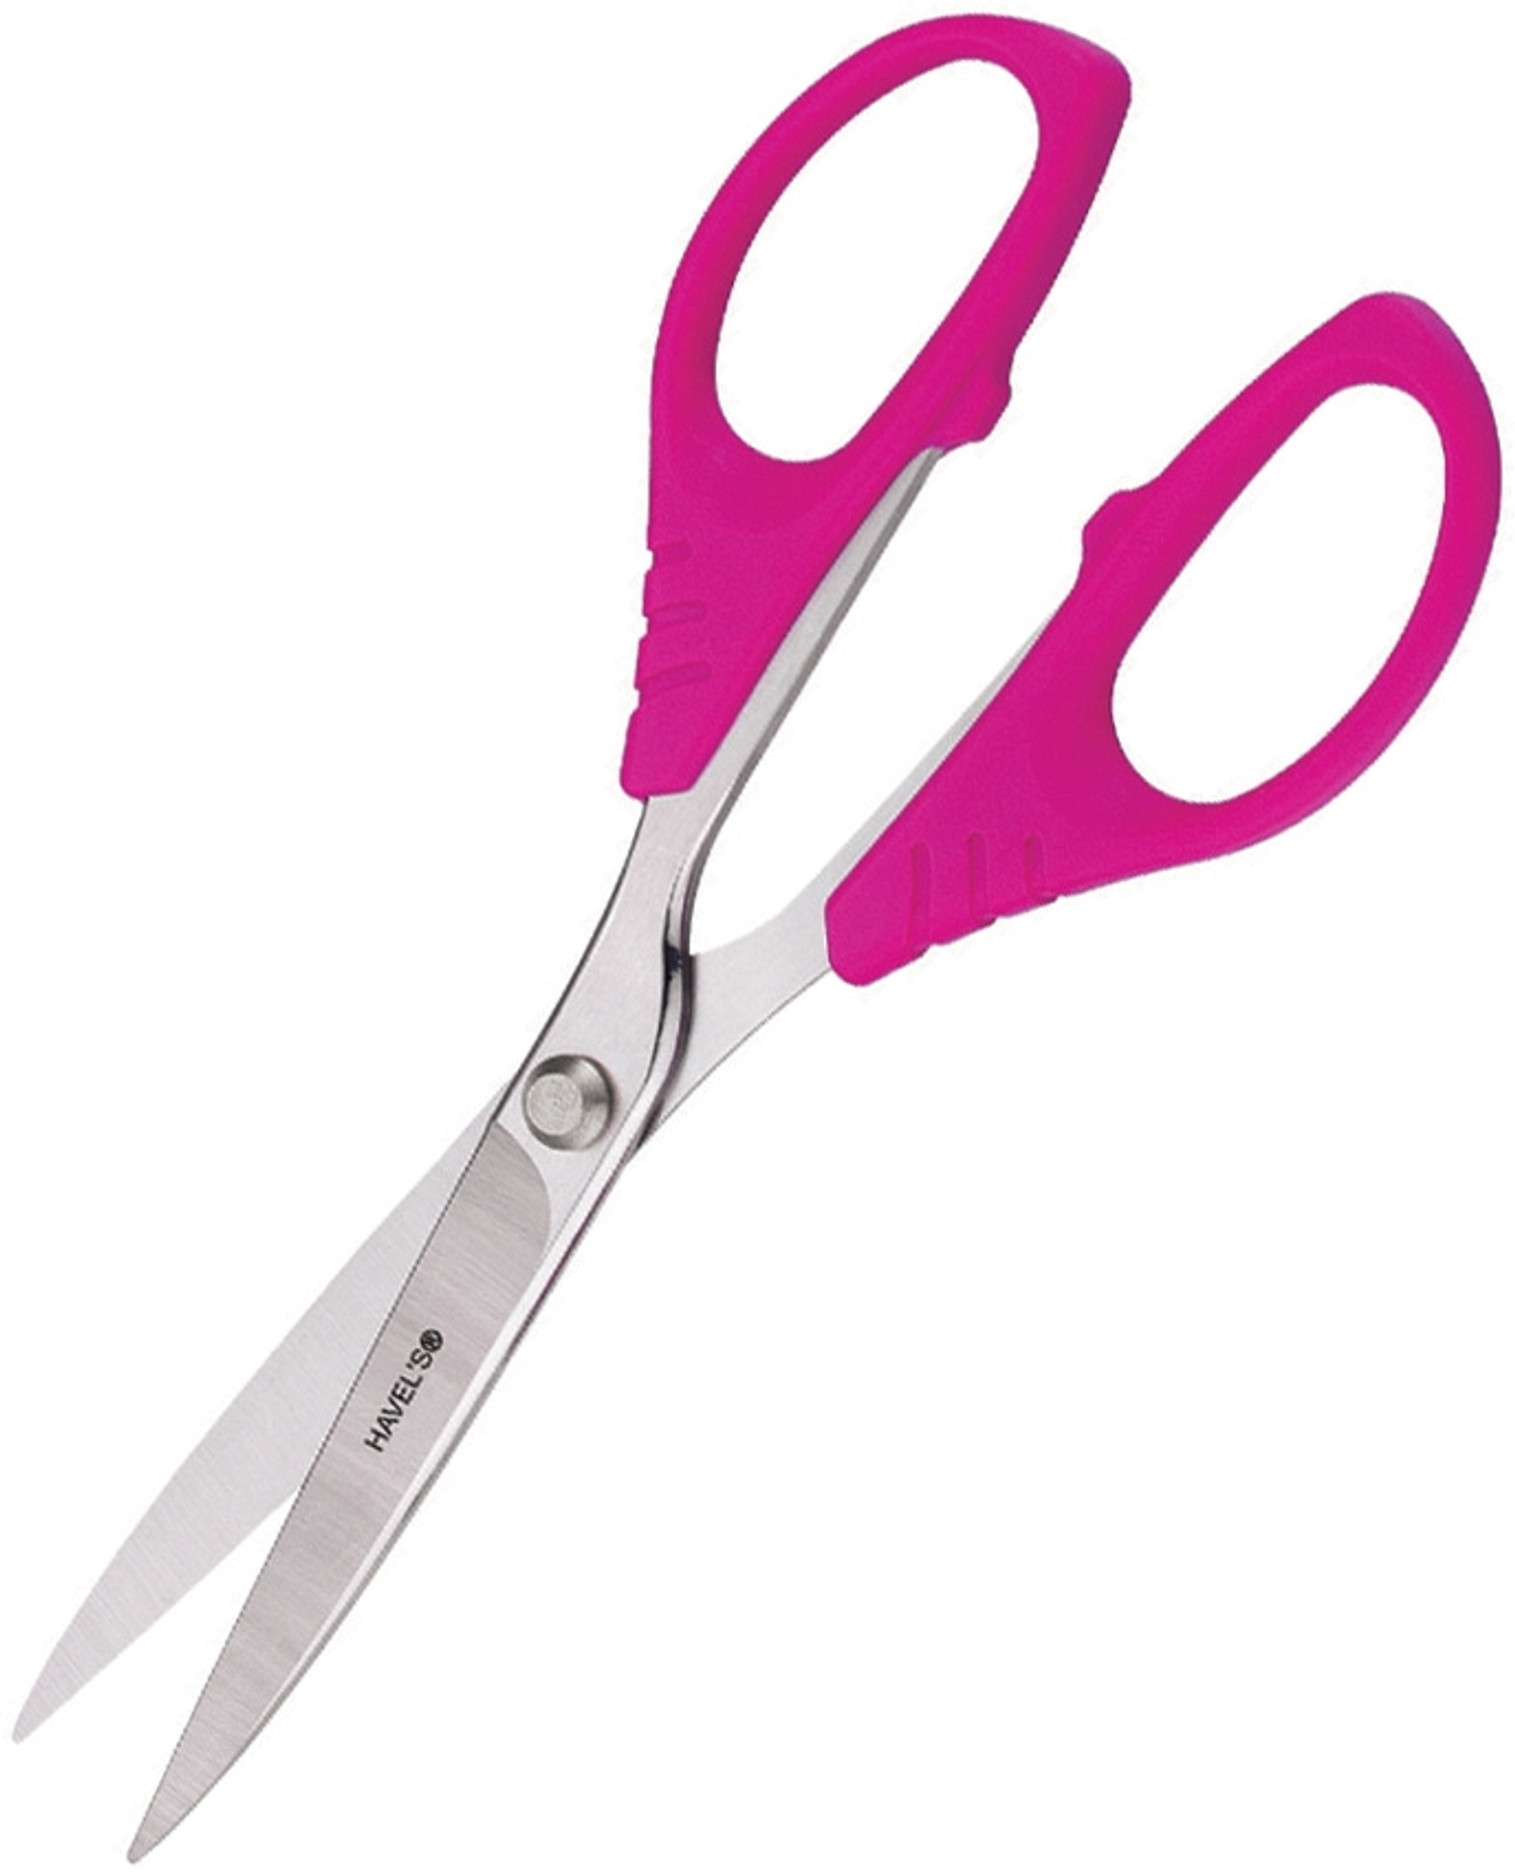 Sew Creative Fabric Scissors HV30178